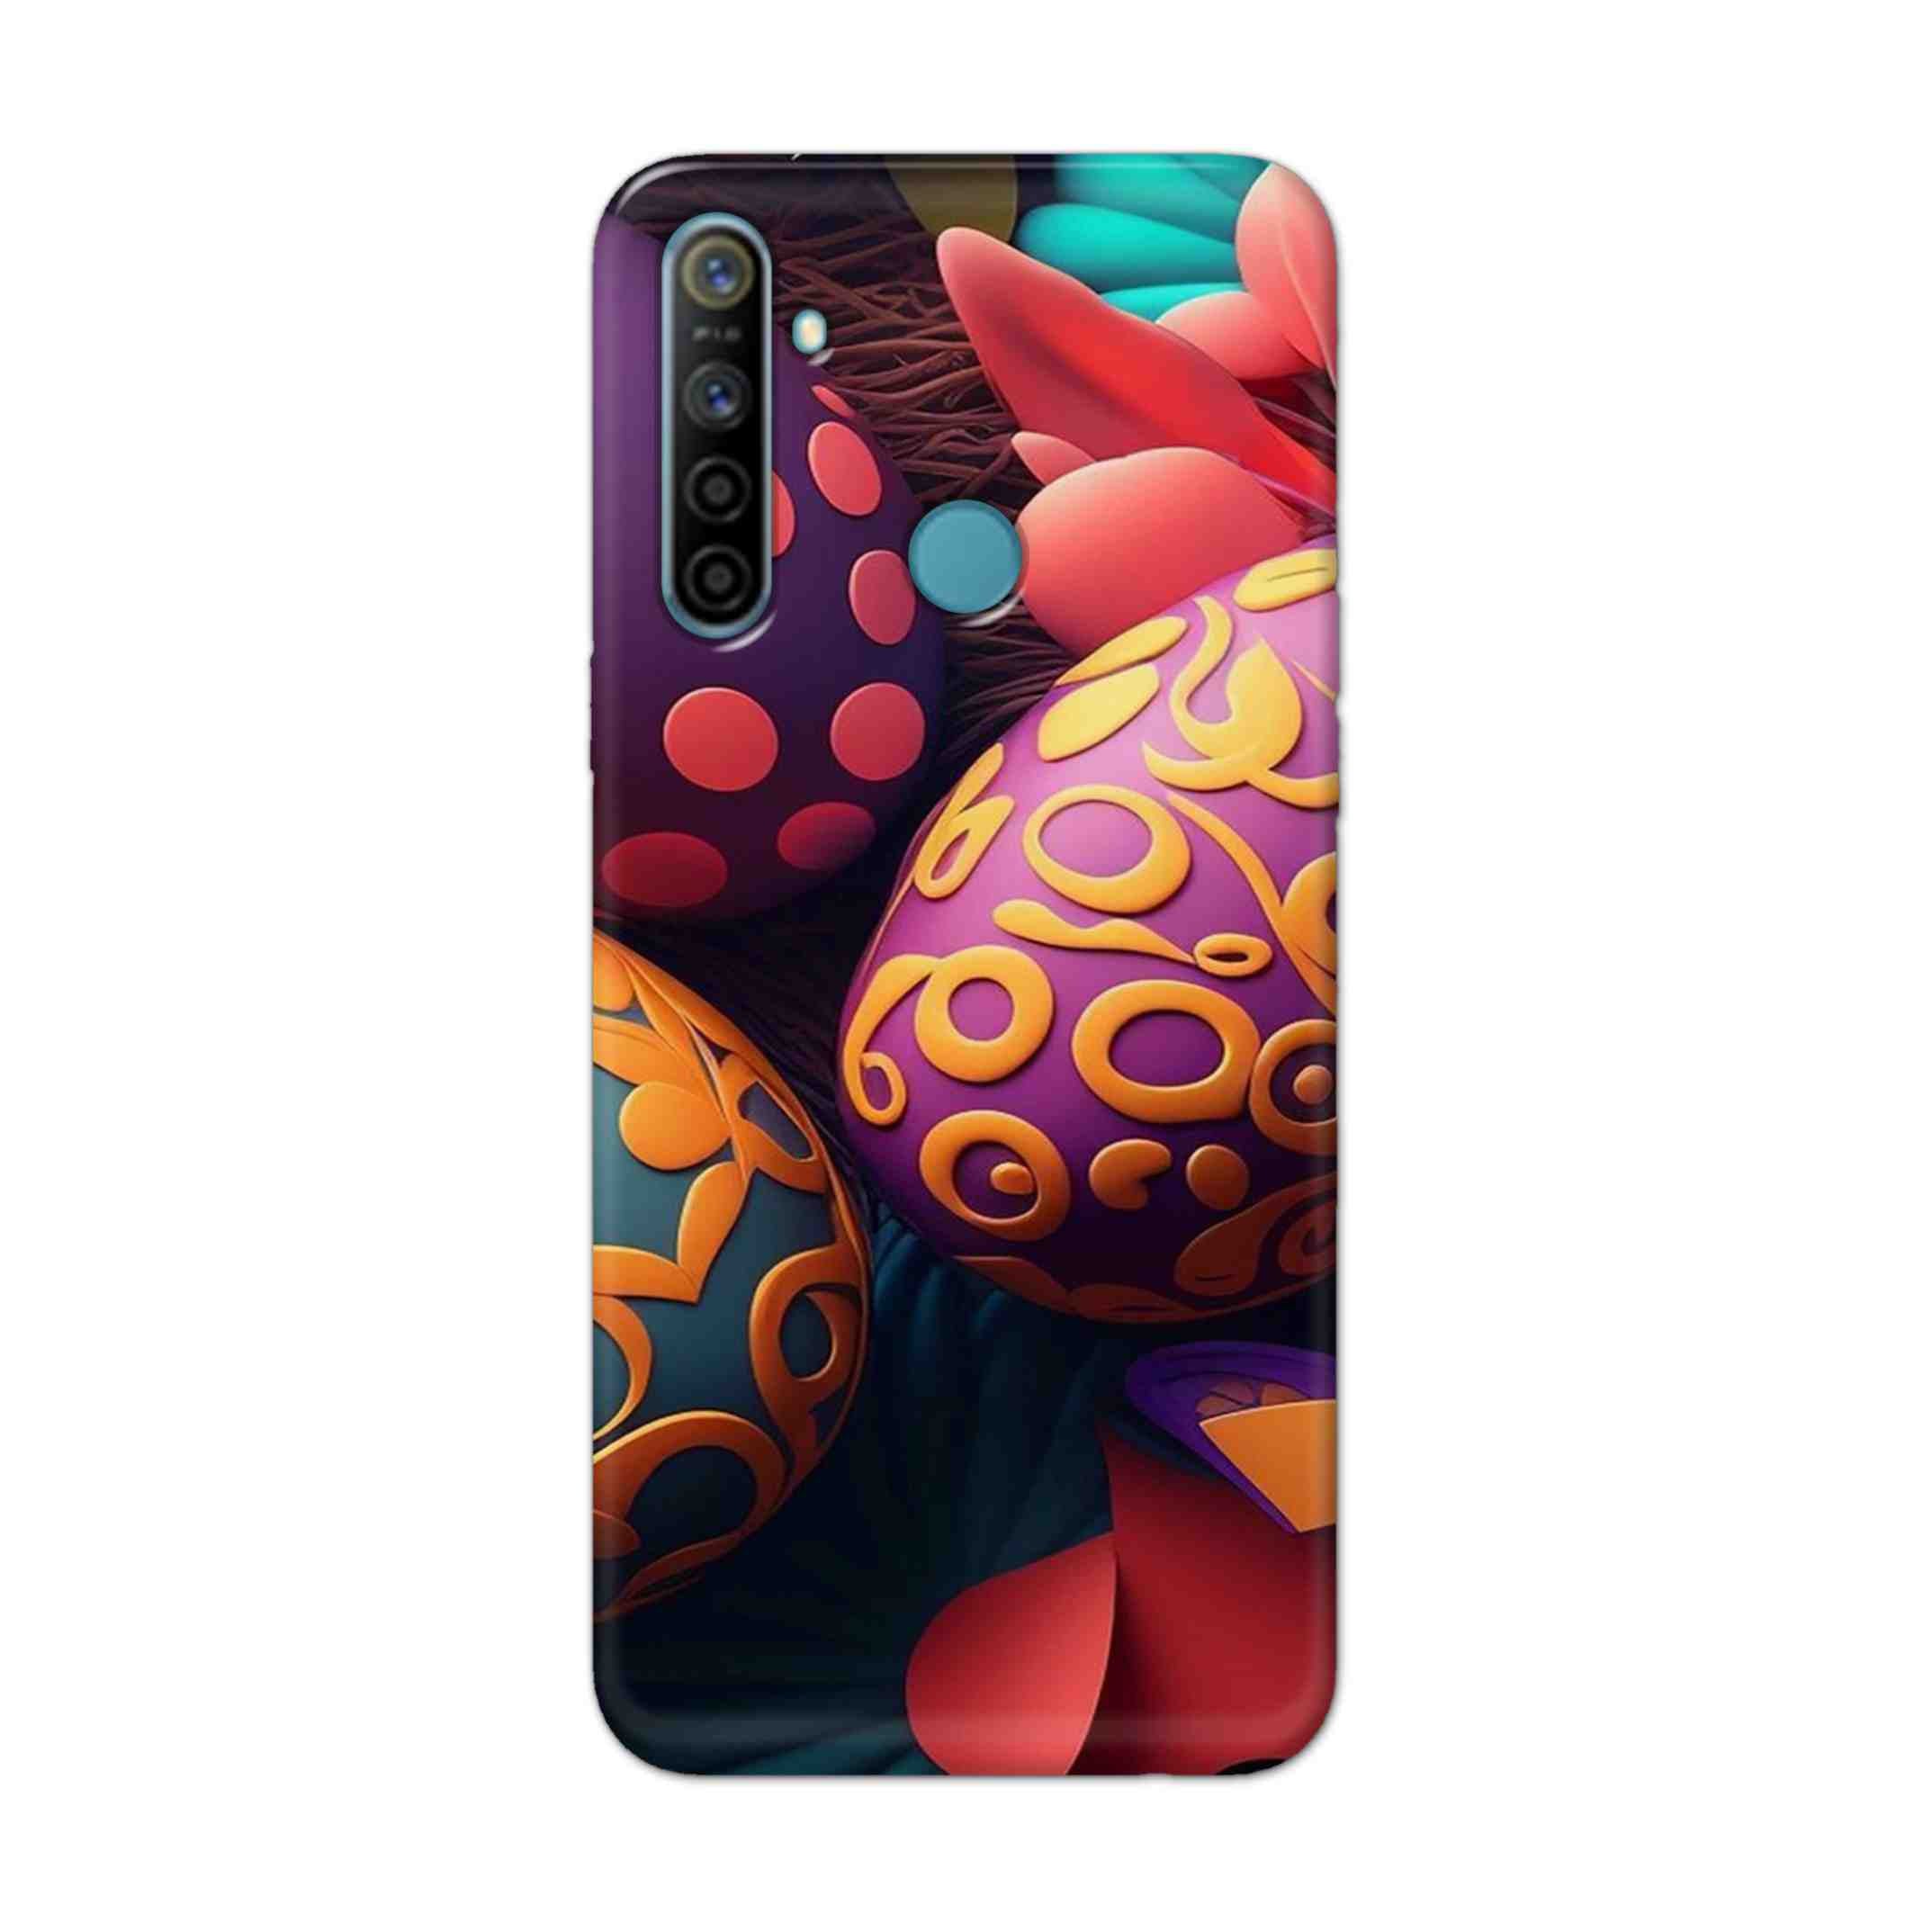 Buy Easter Egg Hard Back Mobile Phone Case Cover For Realme 5i Online